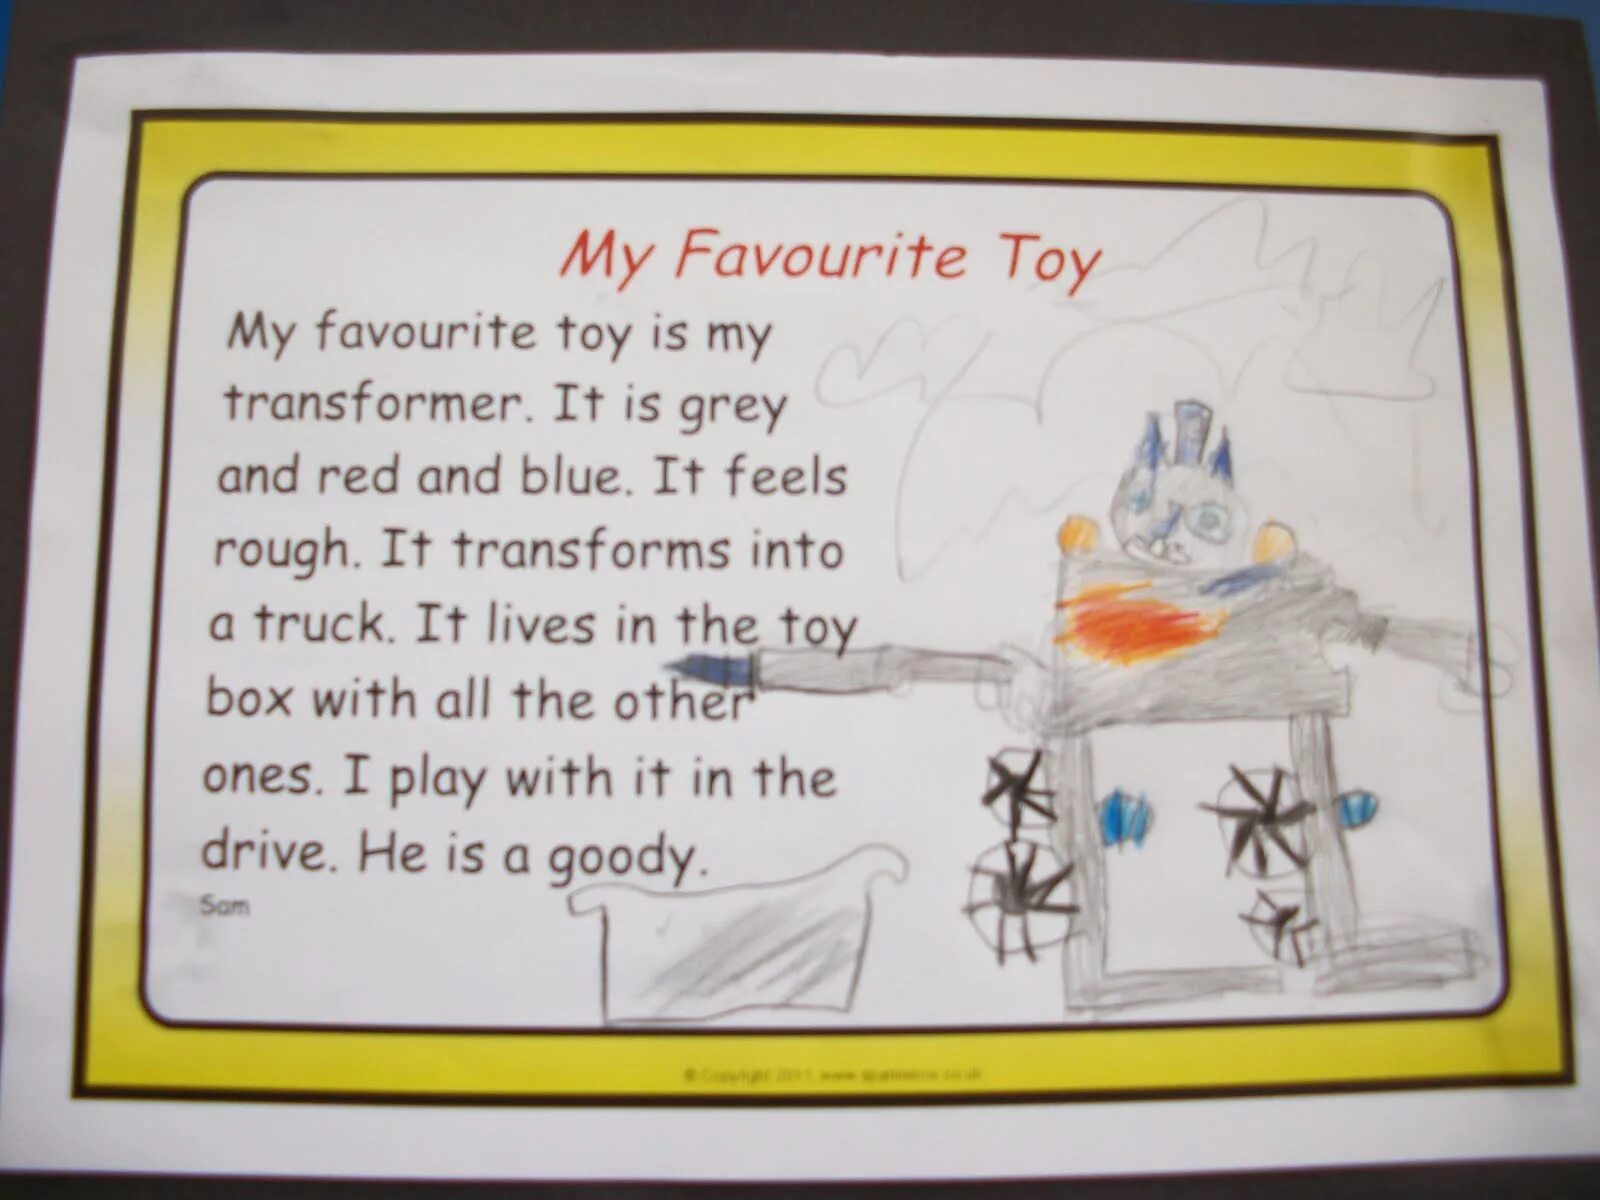 Описать любимую игрушку 2 класс английский язык. Моя любимая игрушка на английском 2 класс. Проект по английскому моя любимая игрушка 3 класс. Проект по английскому о любимой игрушке. Рассказ про любимую игрушку на английском языке.